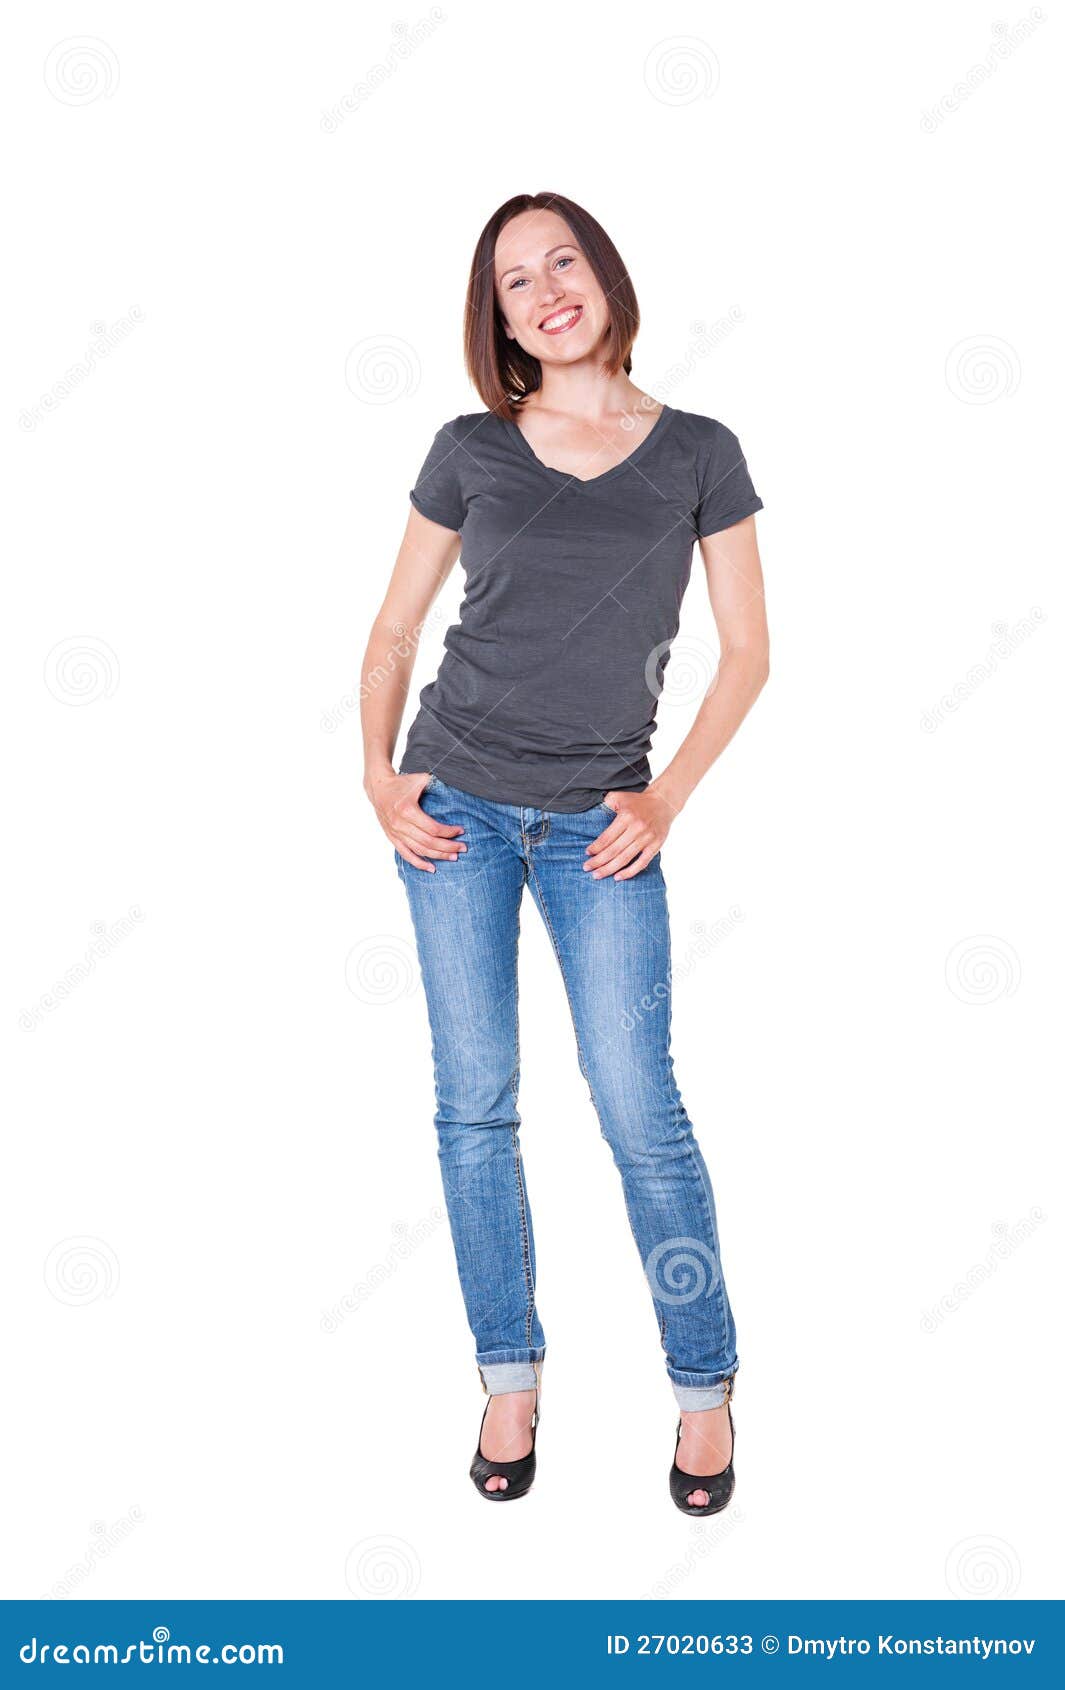 Mooie Jonge Vrouw In Jeans En T Shirt Stock Afbeelding Afbeelding Bestaande Uit Alluring